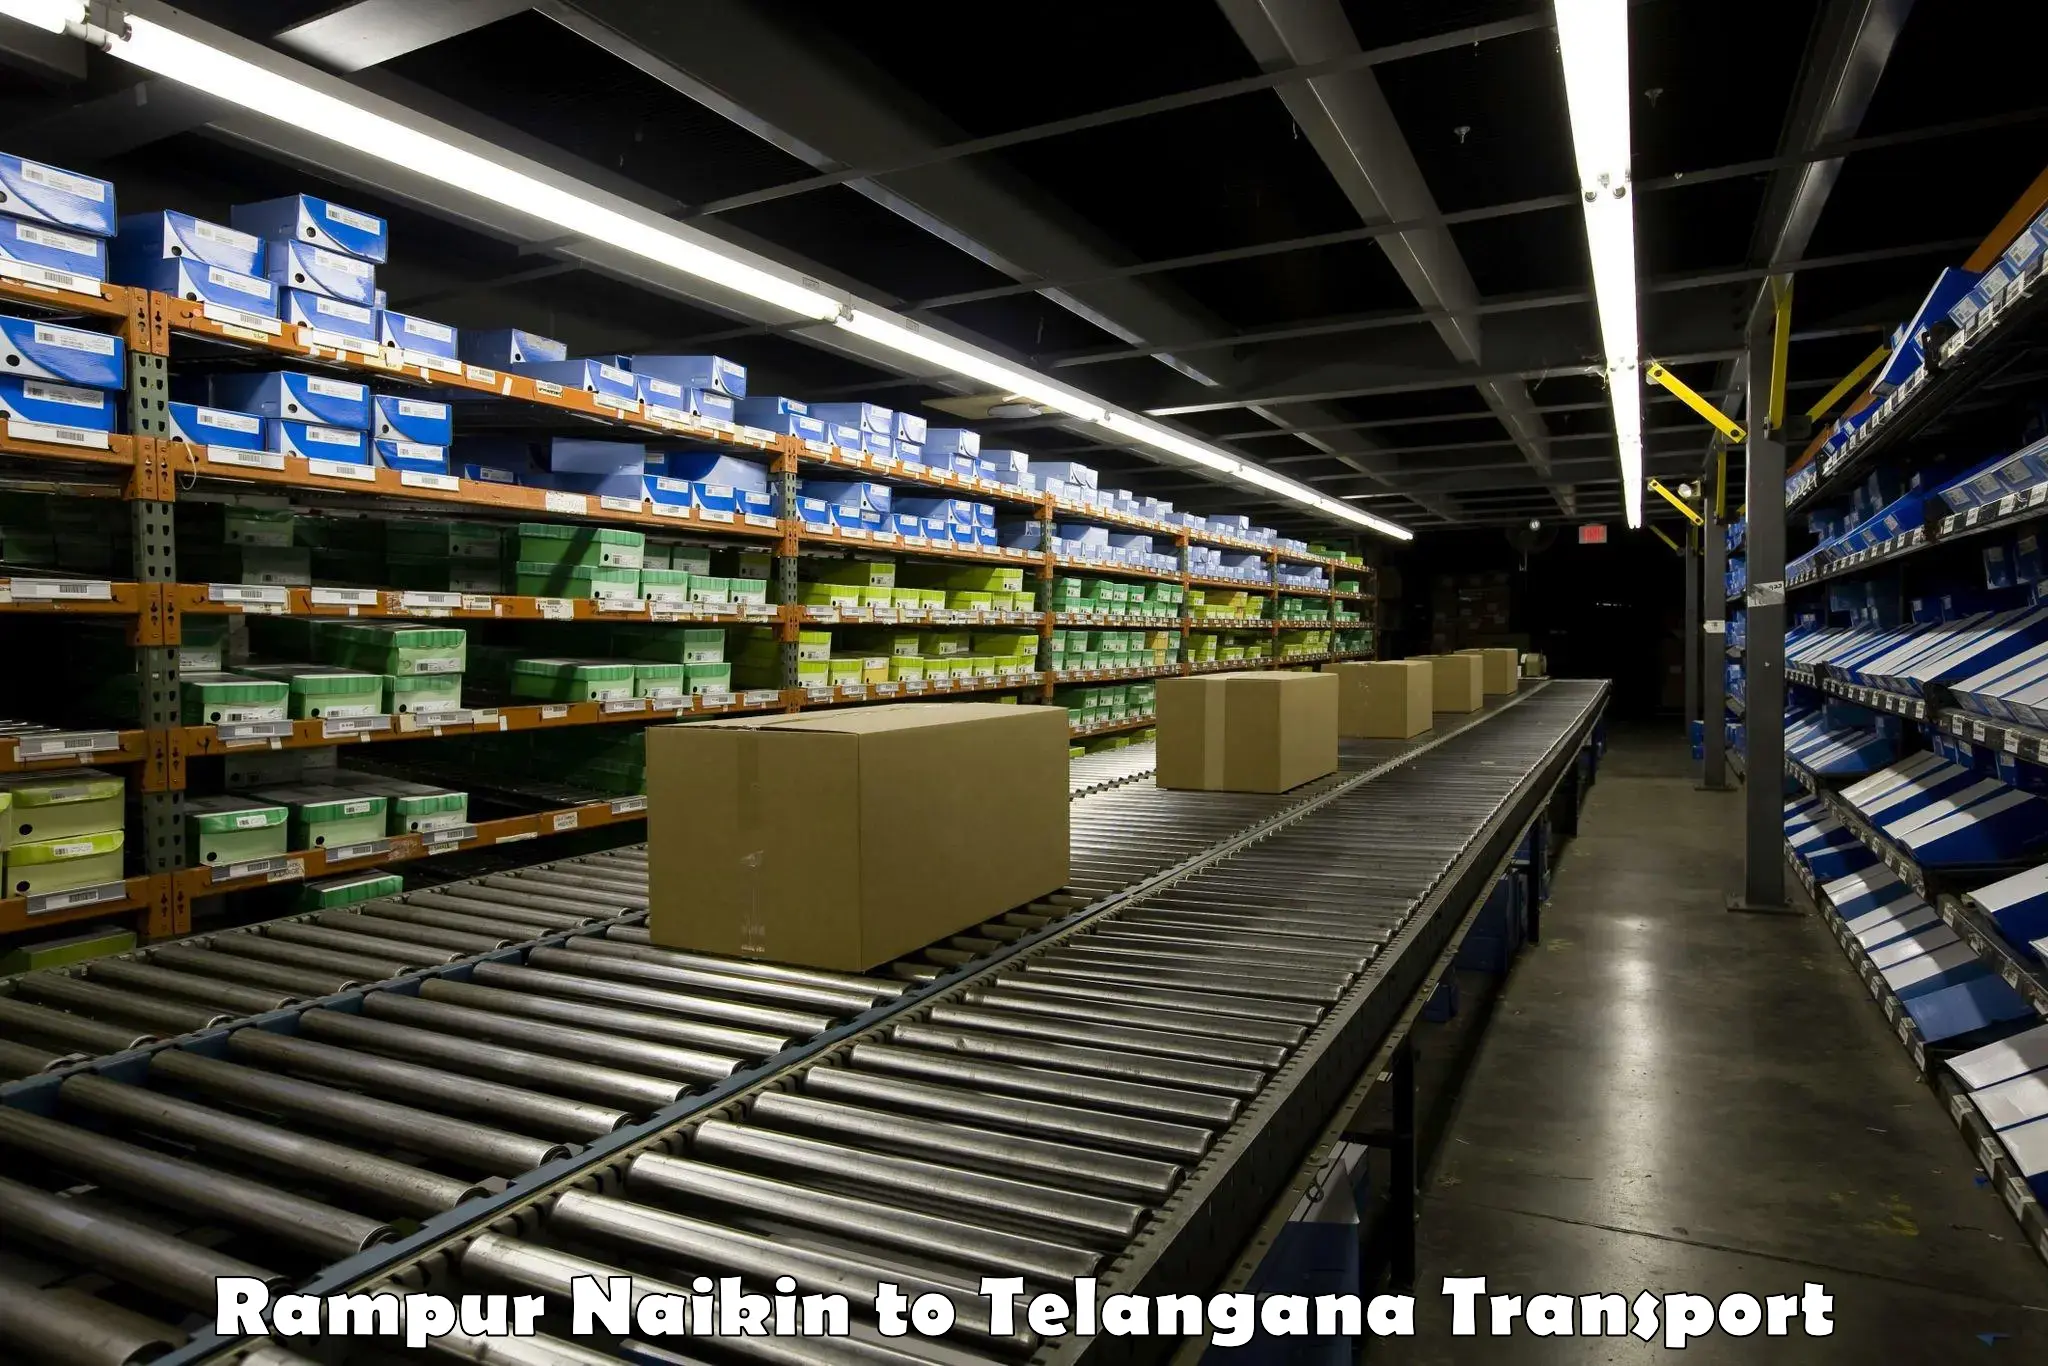 Luggage transport services Rampur Naikin to Telangana